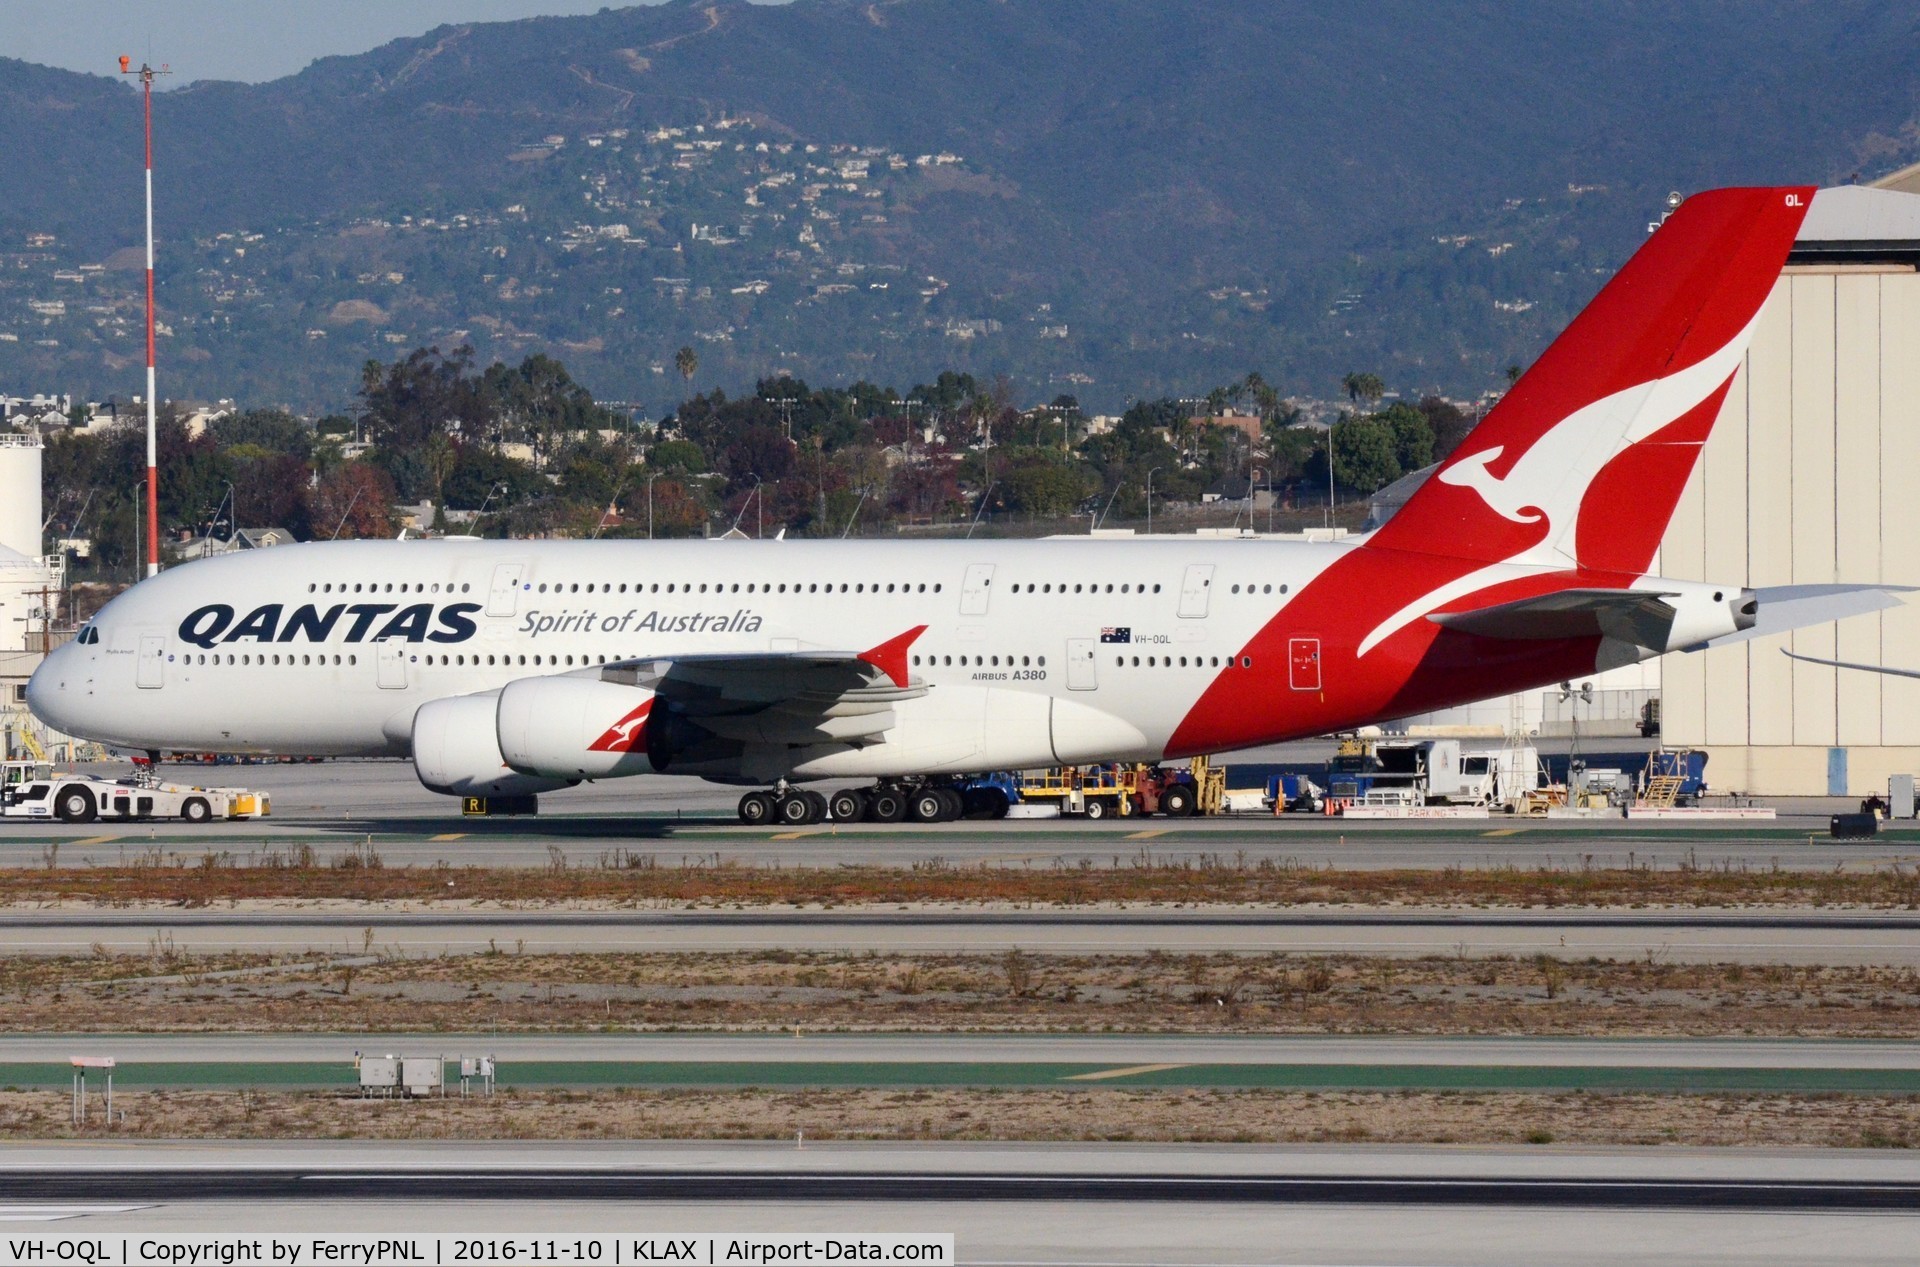 VH-OQL, 2011 Airbus A380-842 C/N 074, Qantas A388 under tow